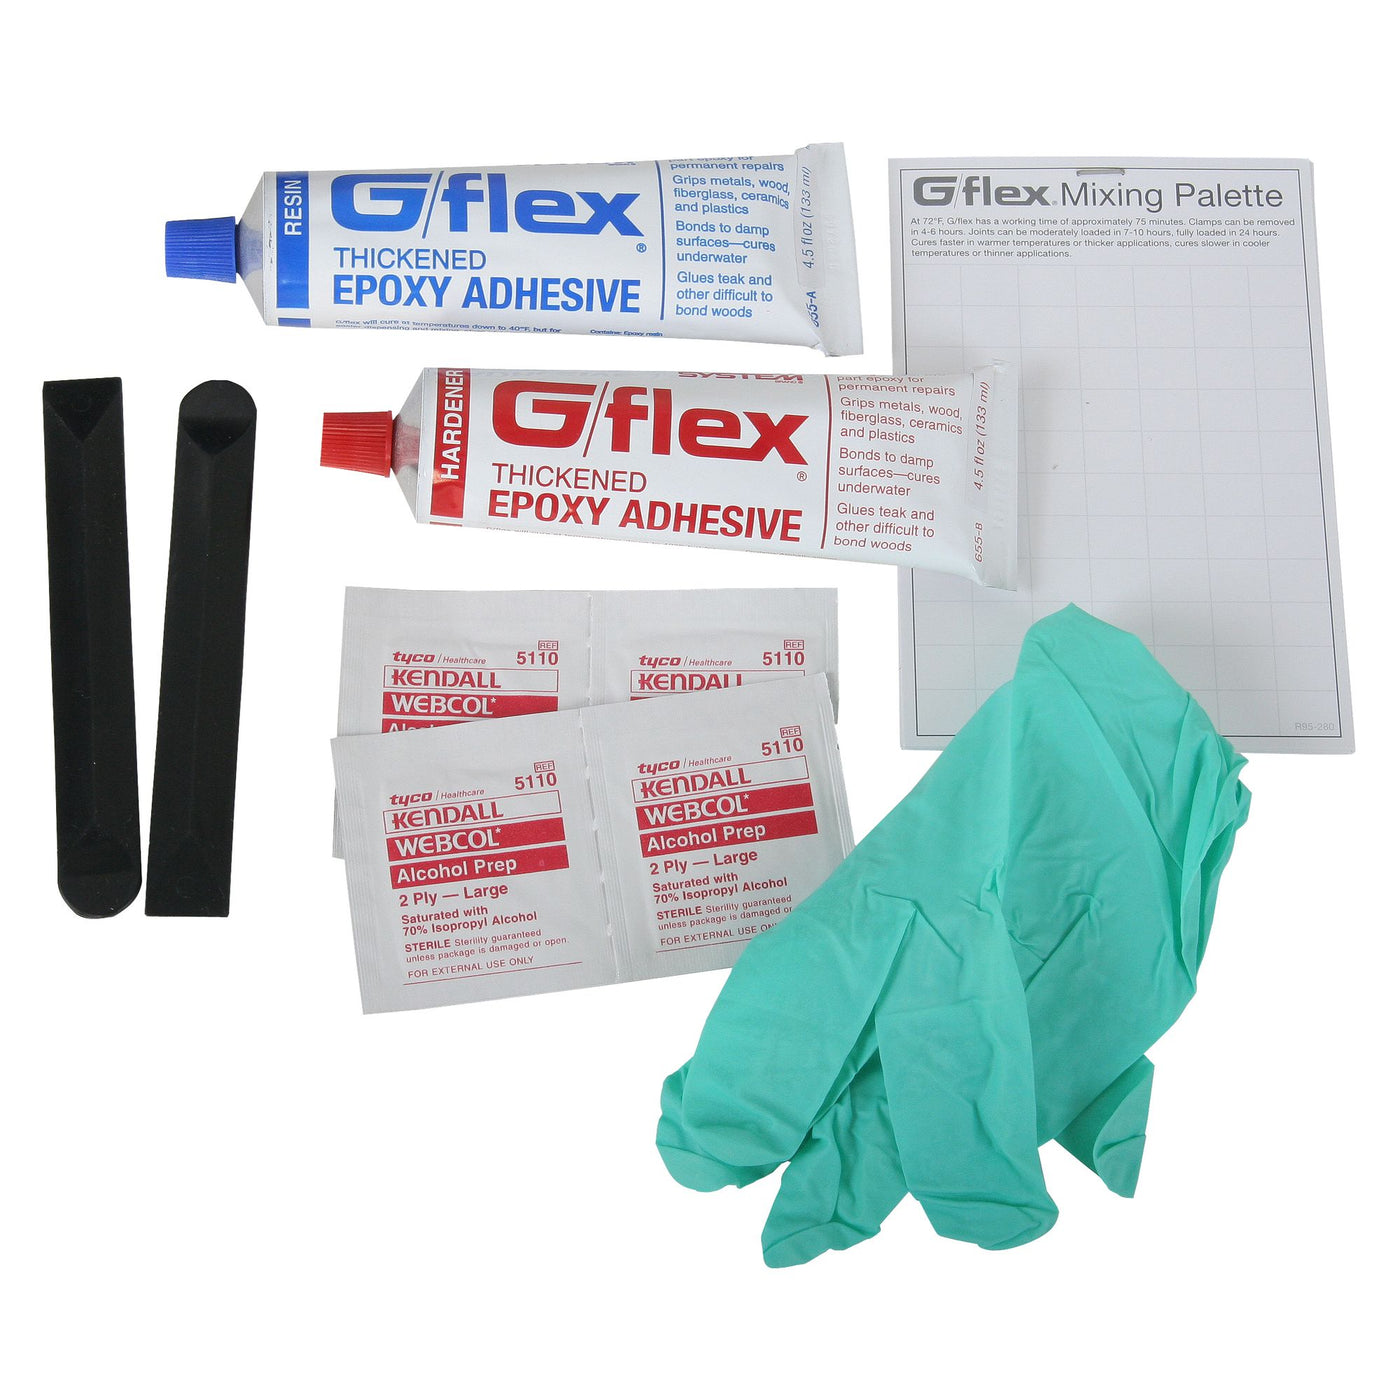 G/flex 655-K Plastic Boat Repair Kit